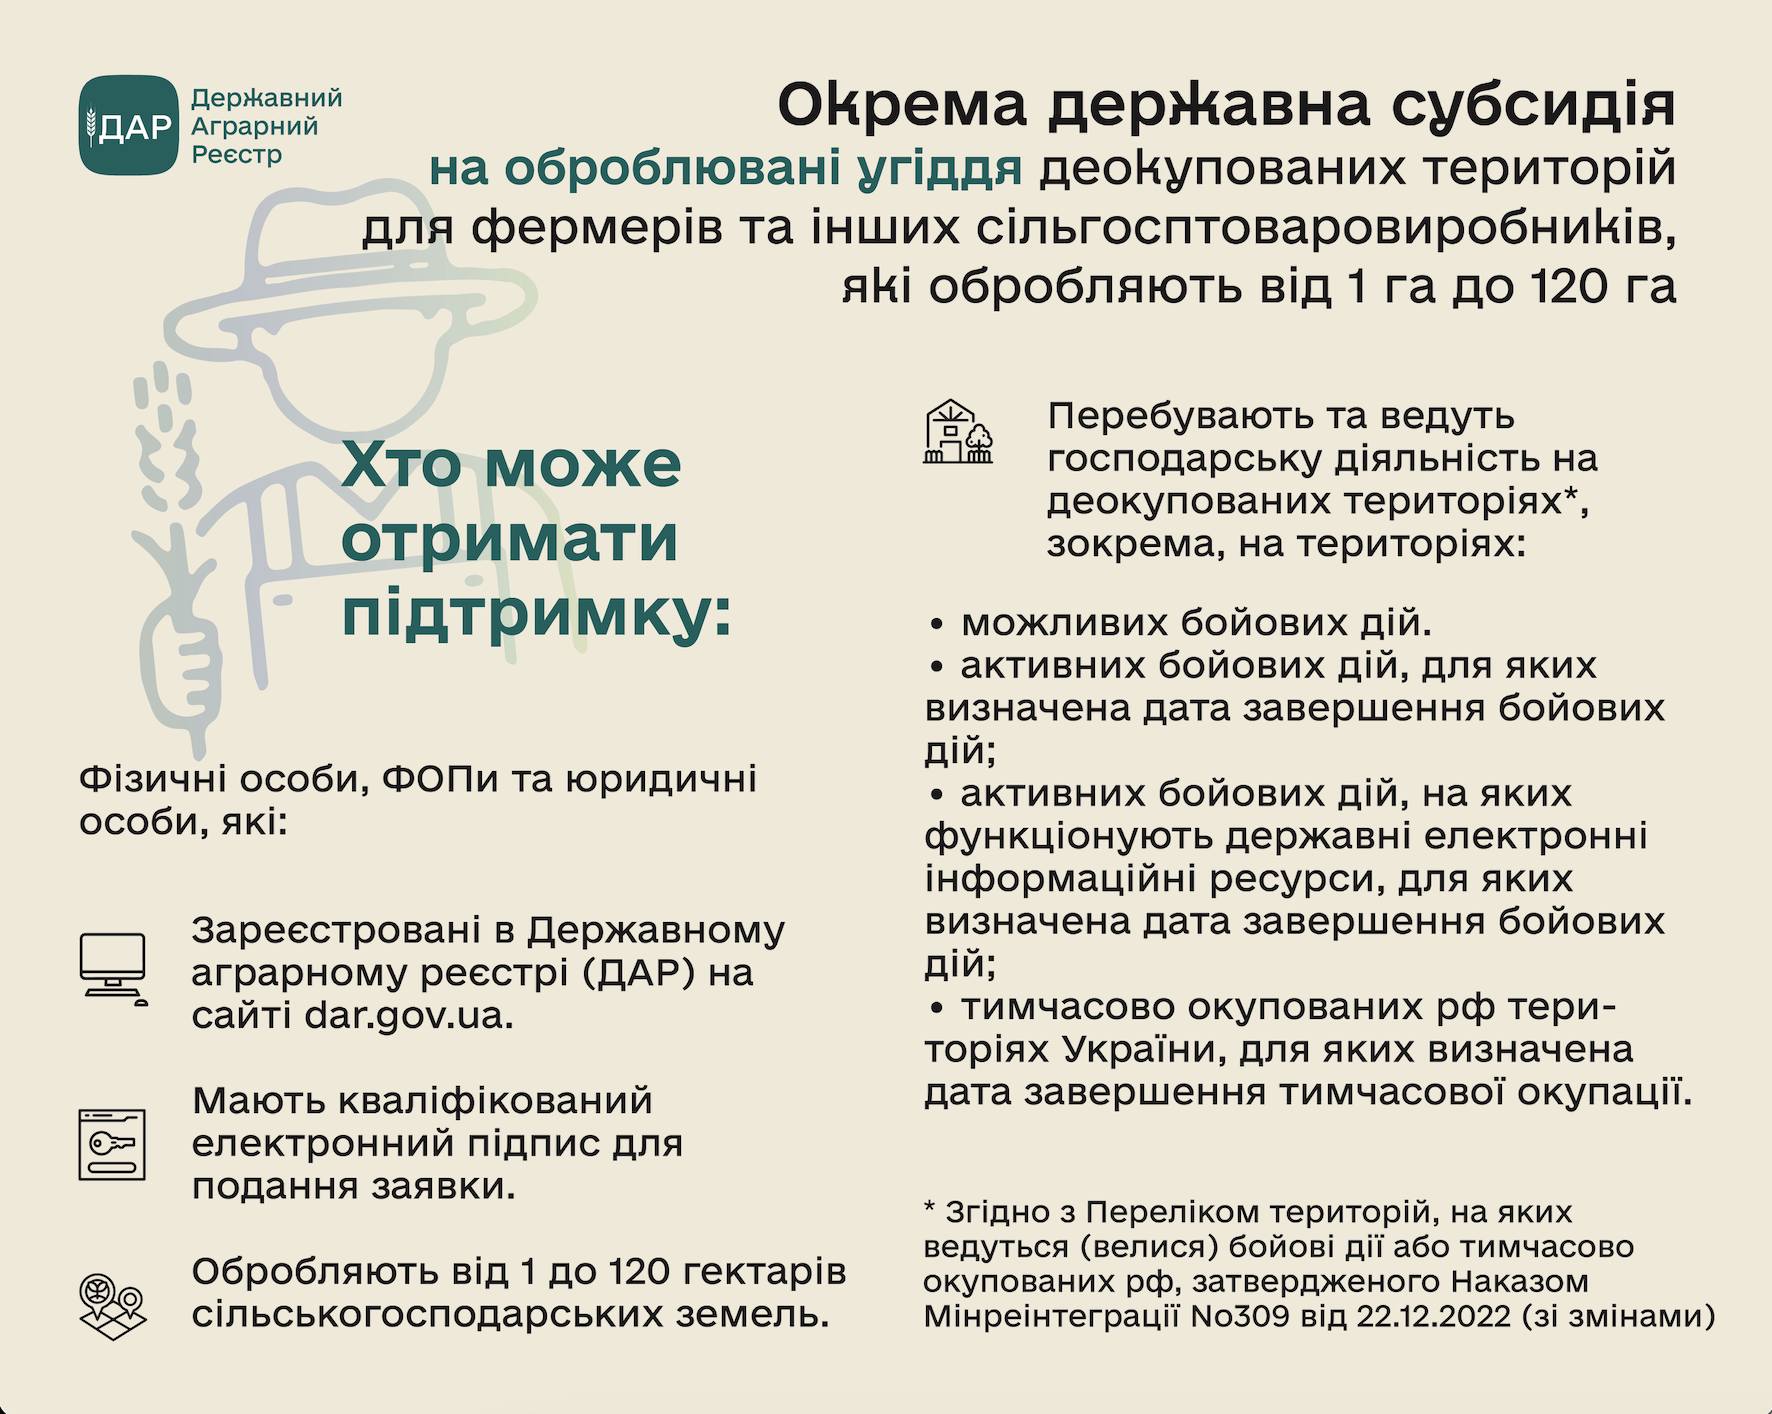 Для отримання підтримки треба скористатися кабінетом сільгосптоваровиробника на dar.gov.ua